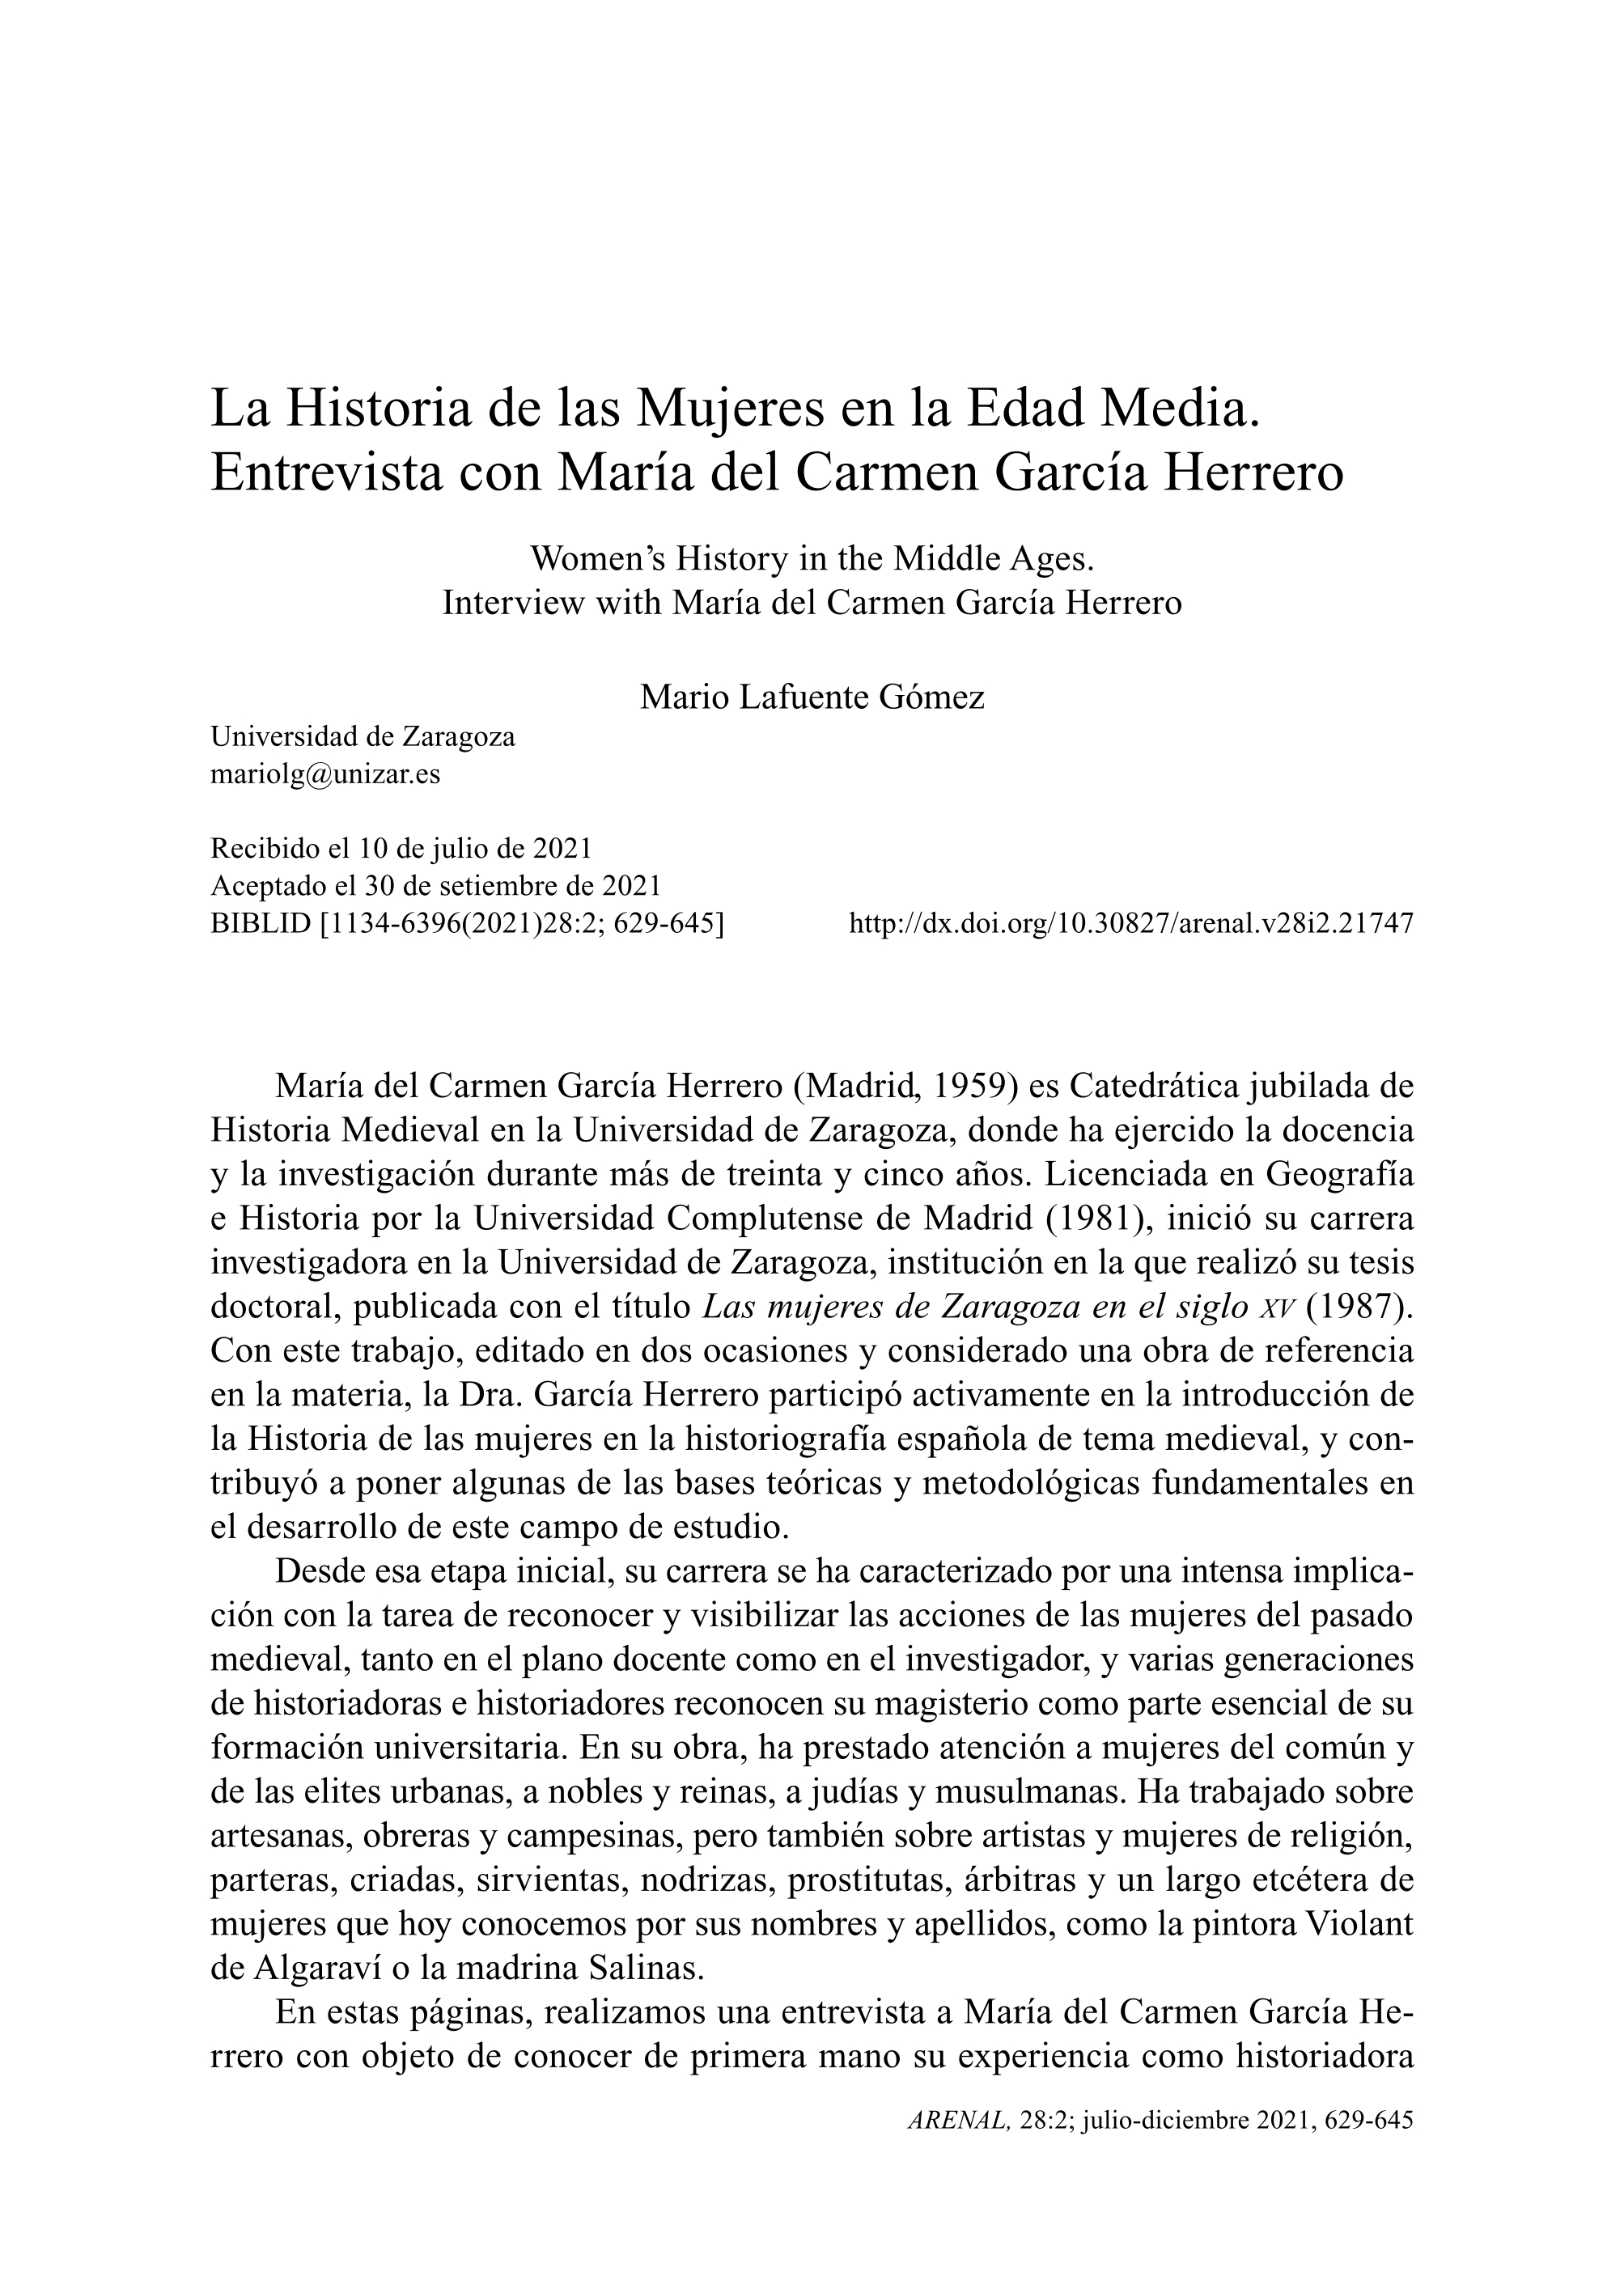 La Historia de las mujeres en la Edad Media. Entrevista con María del Carmen García Herrero